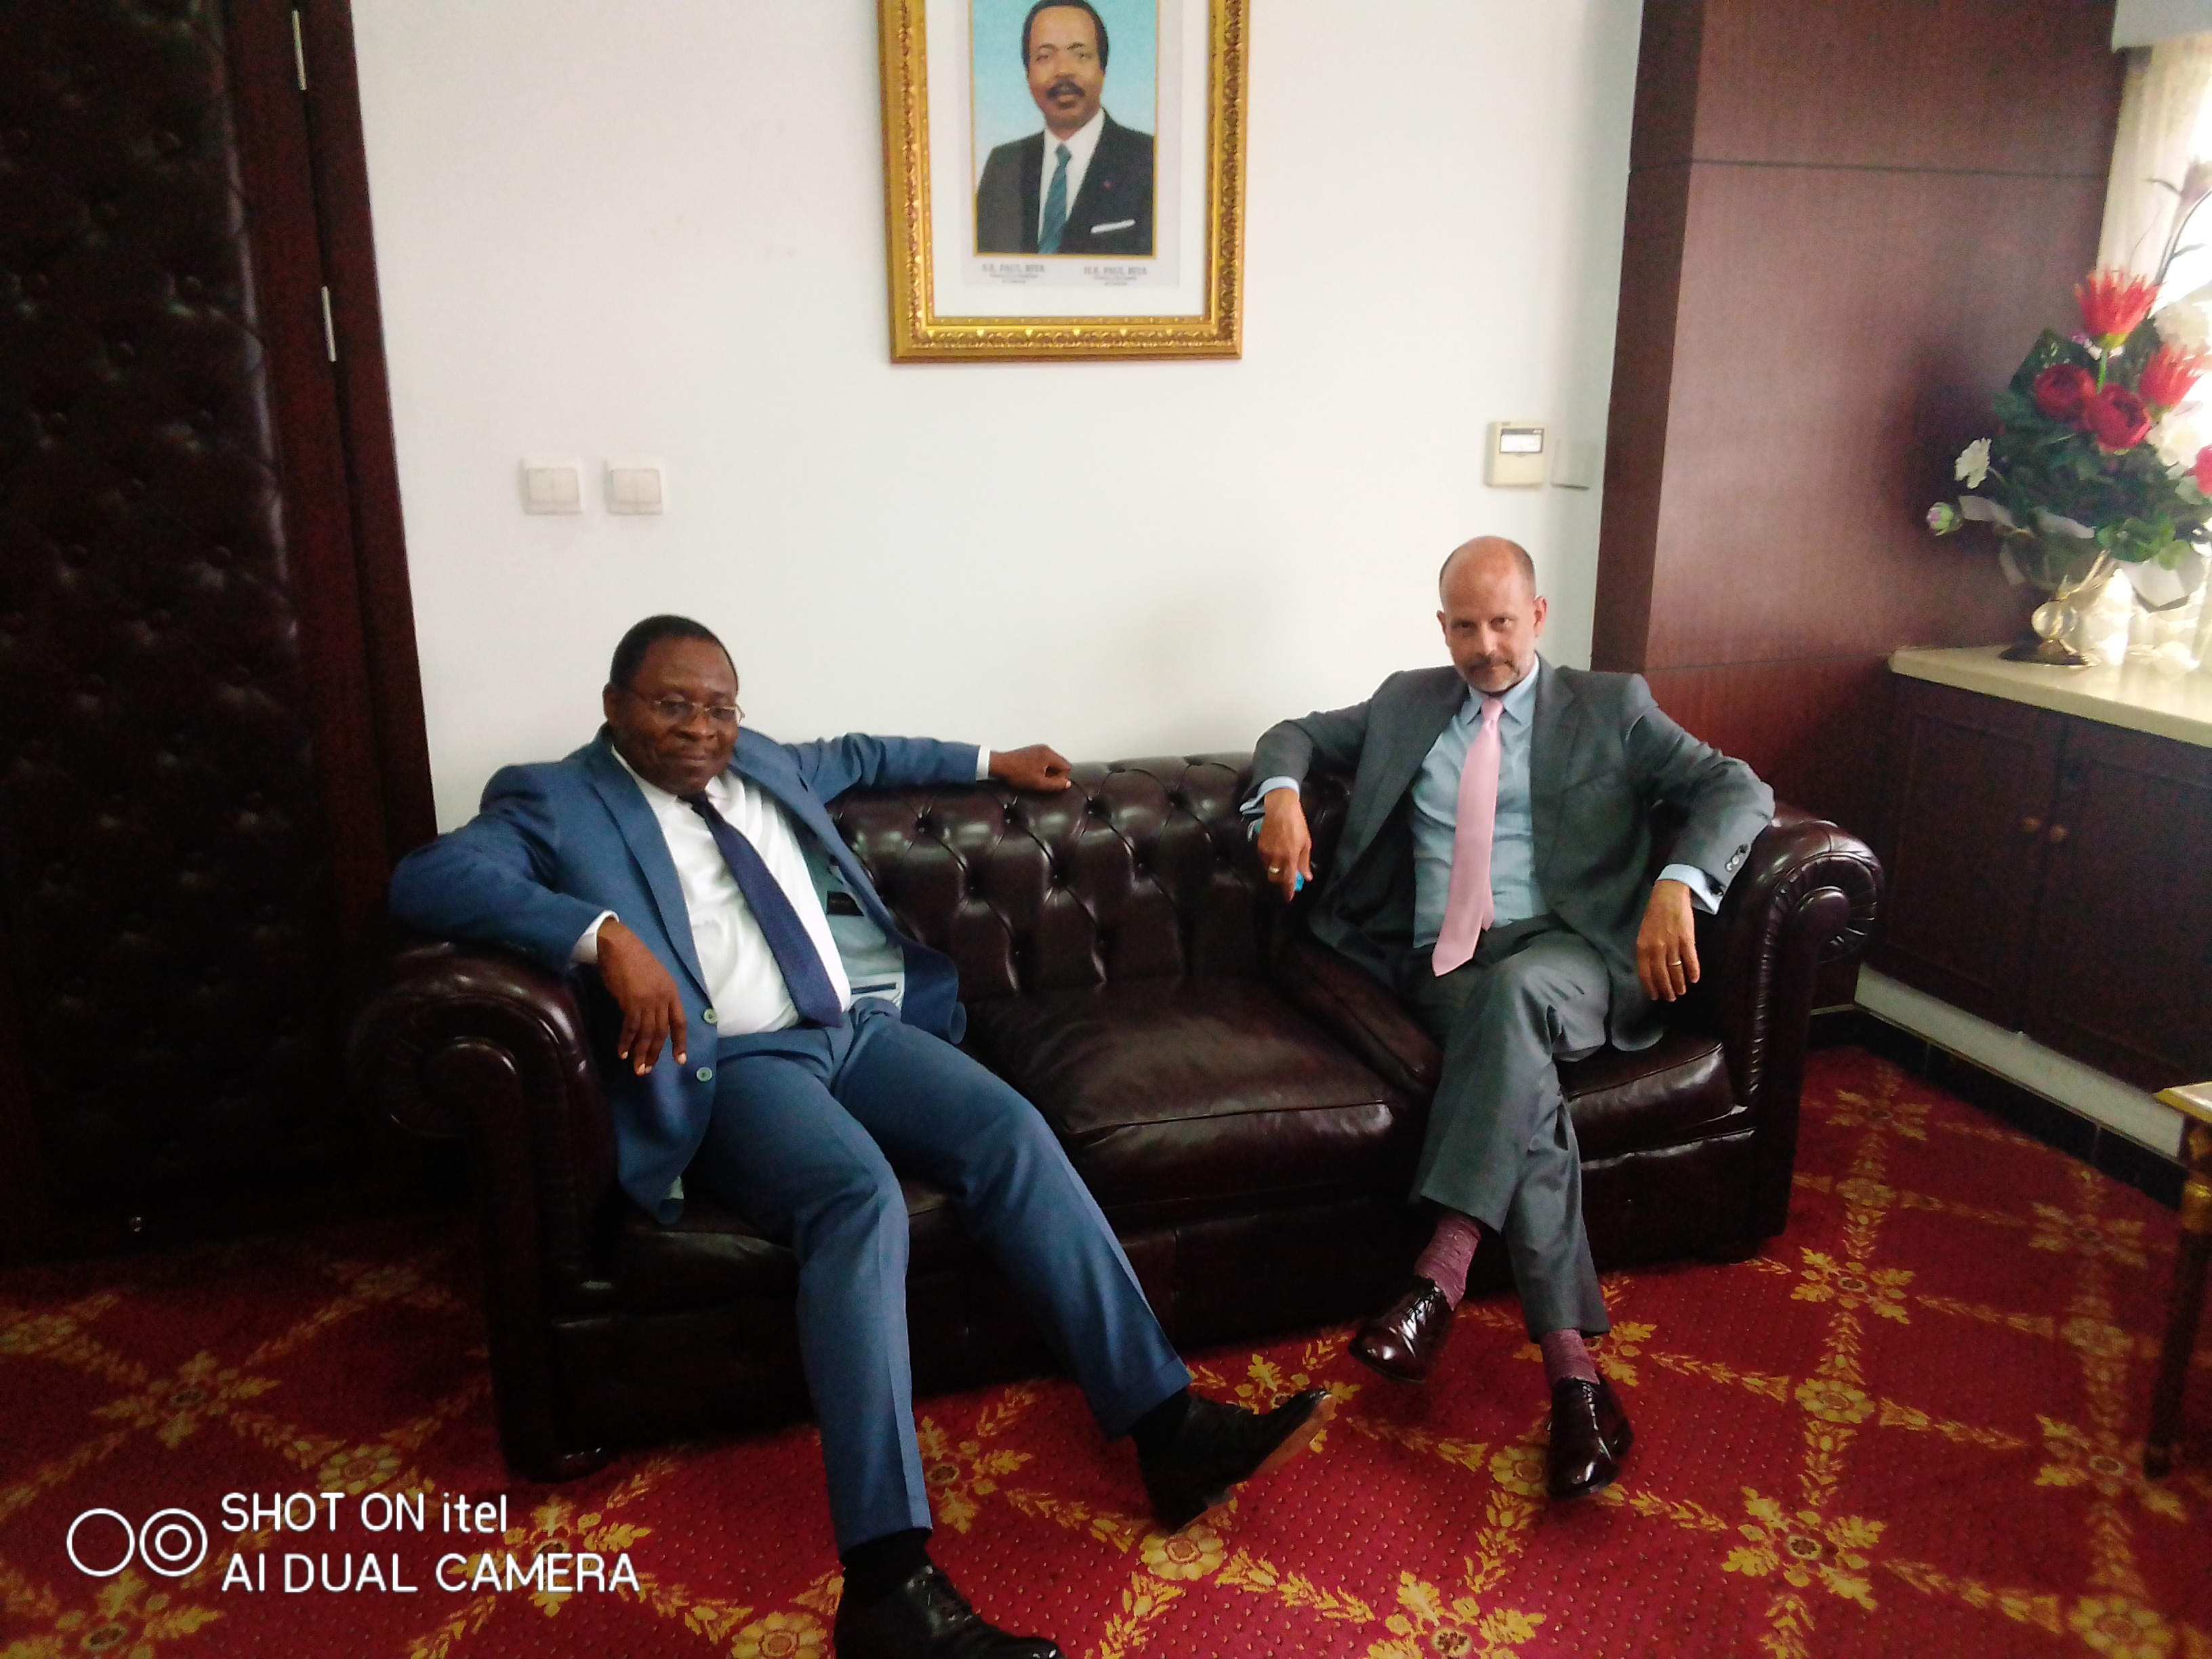 Le Ministre de l’Eau et de l’Energie, Gaston ELOUNDOU ESSOMBA a reçu ce jour en audience S.E.M. Christopher J. LAMORA, l’Ambassadeur des Etats Unies au Cameroun